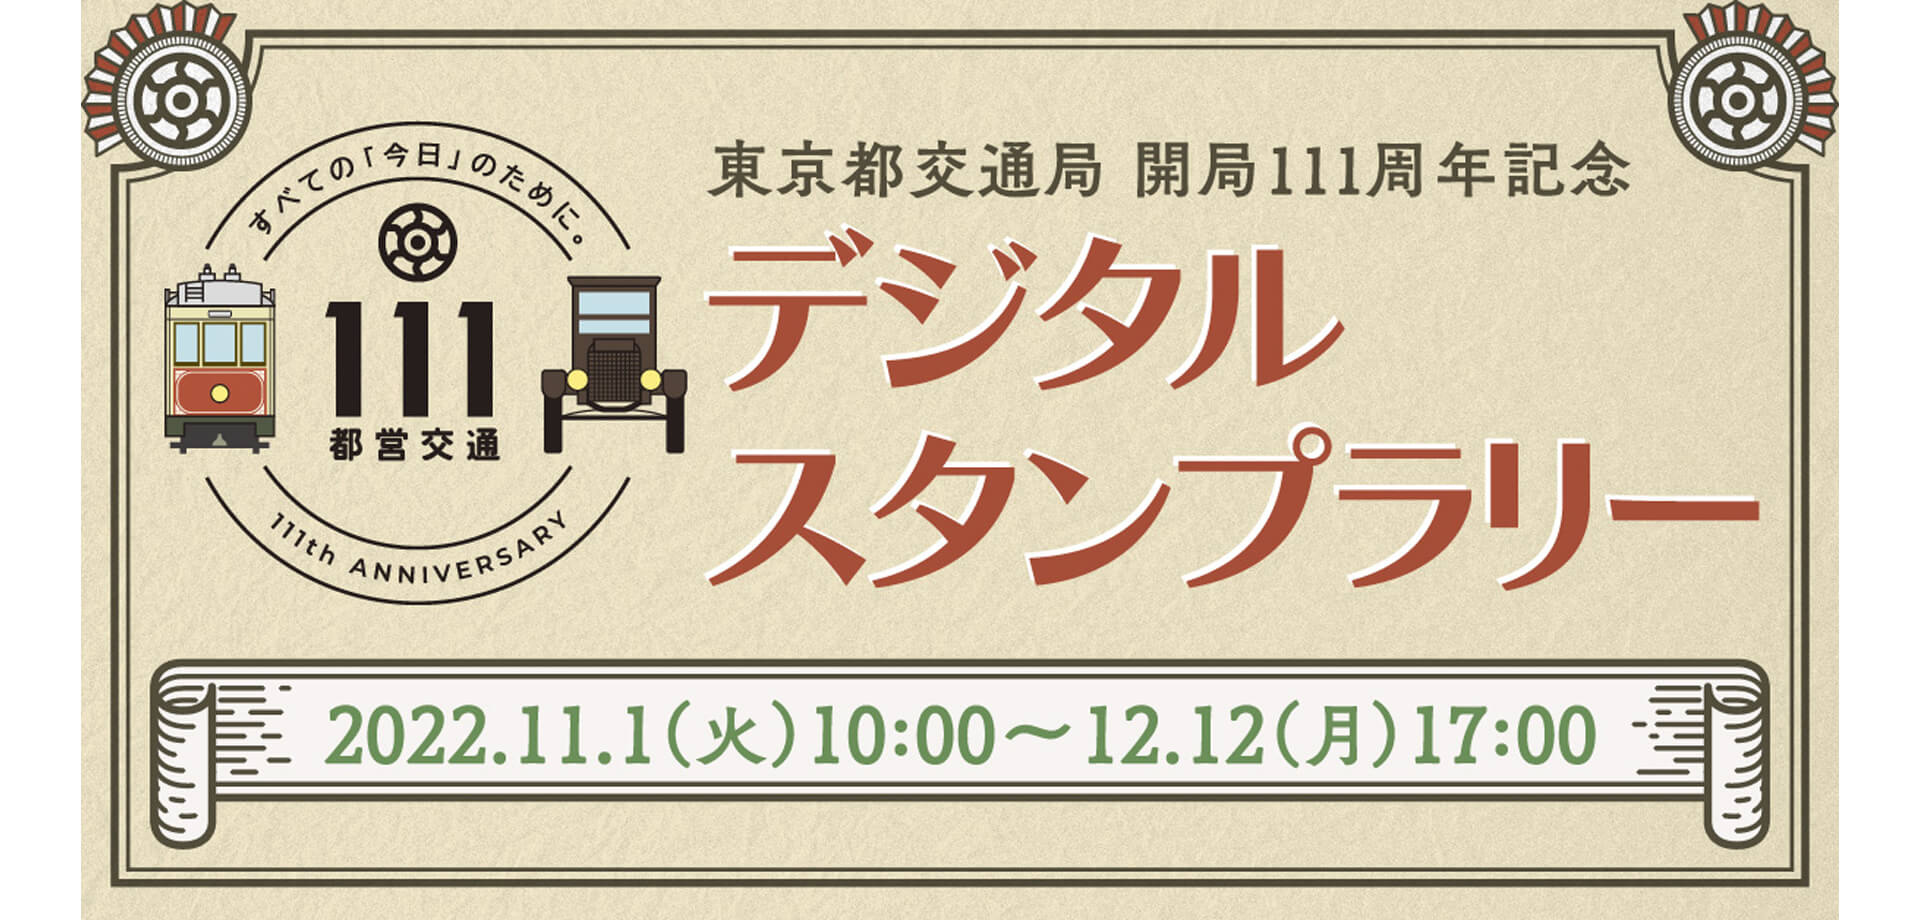 東京都交通局 開局111周年記念企画 デジタルスタンプラリー